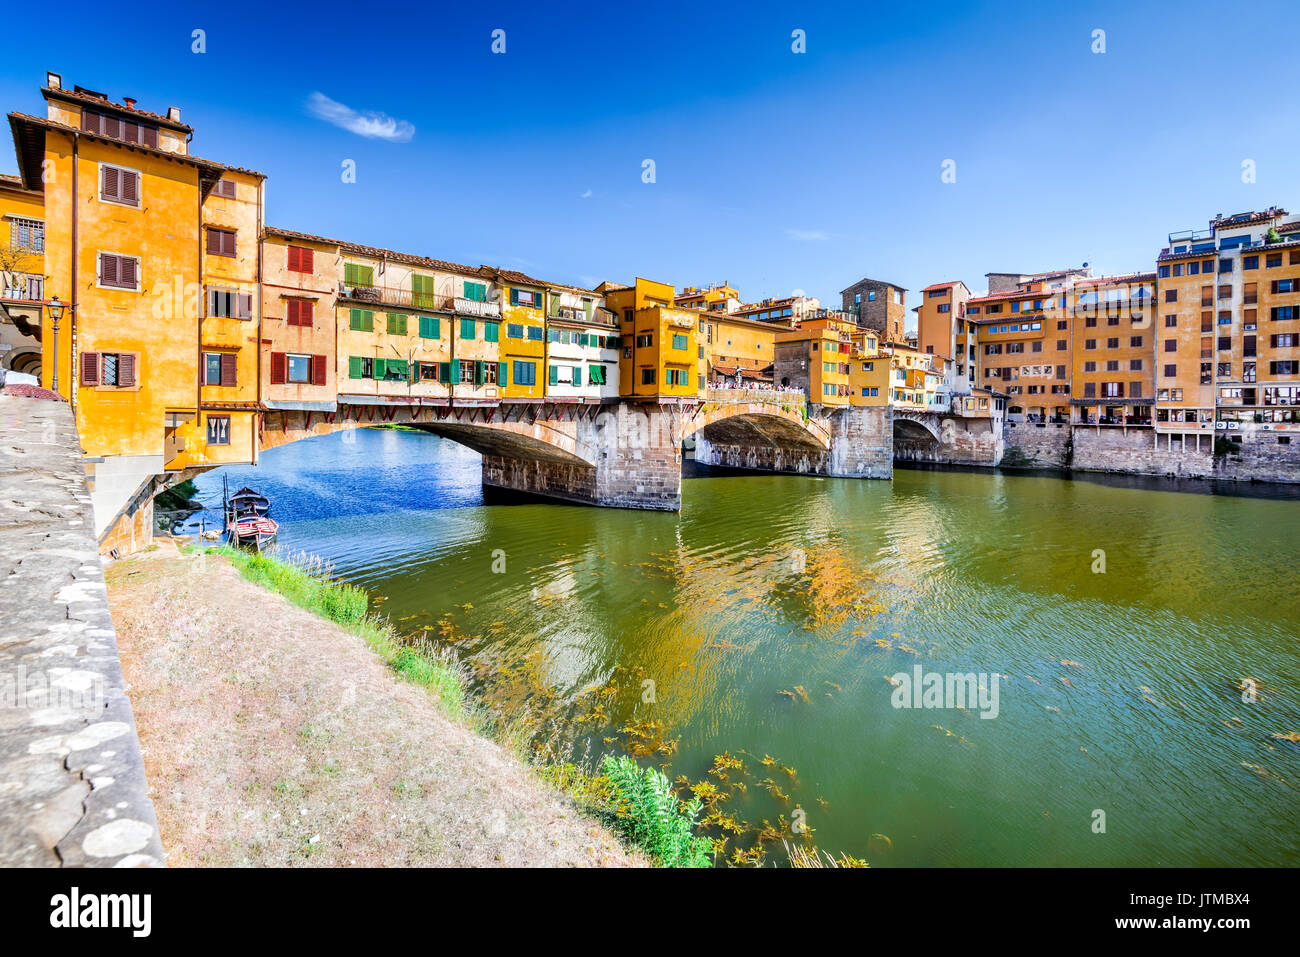 Florencia, la Toscana - Ponte Vecchio, el puente medieval sobre el río Arno sunlighted, Italia. Foto de stock